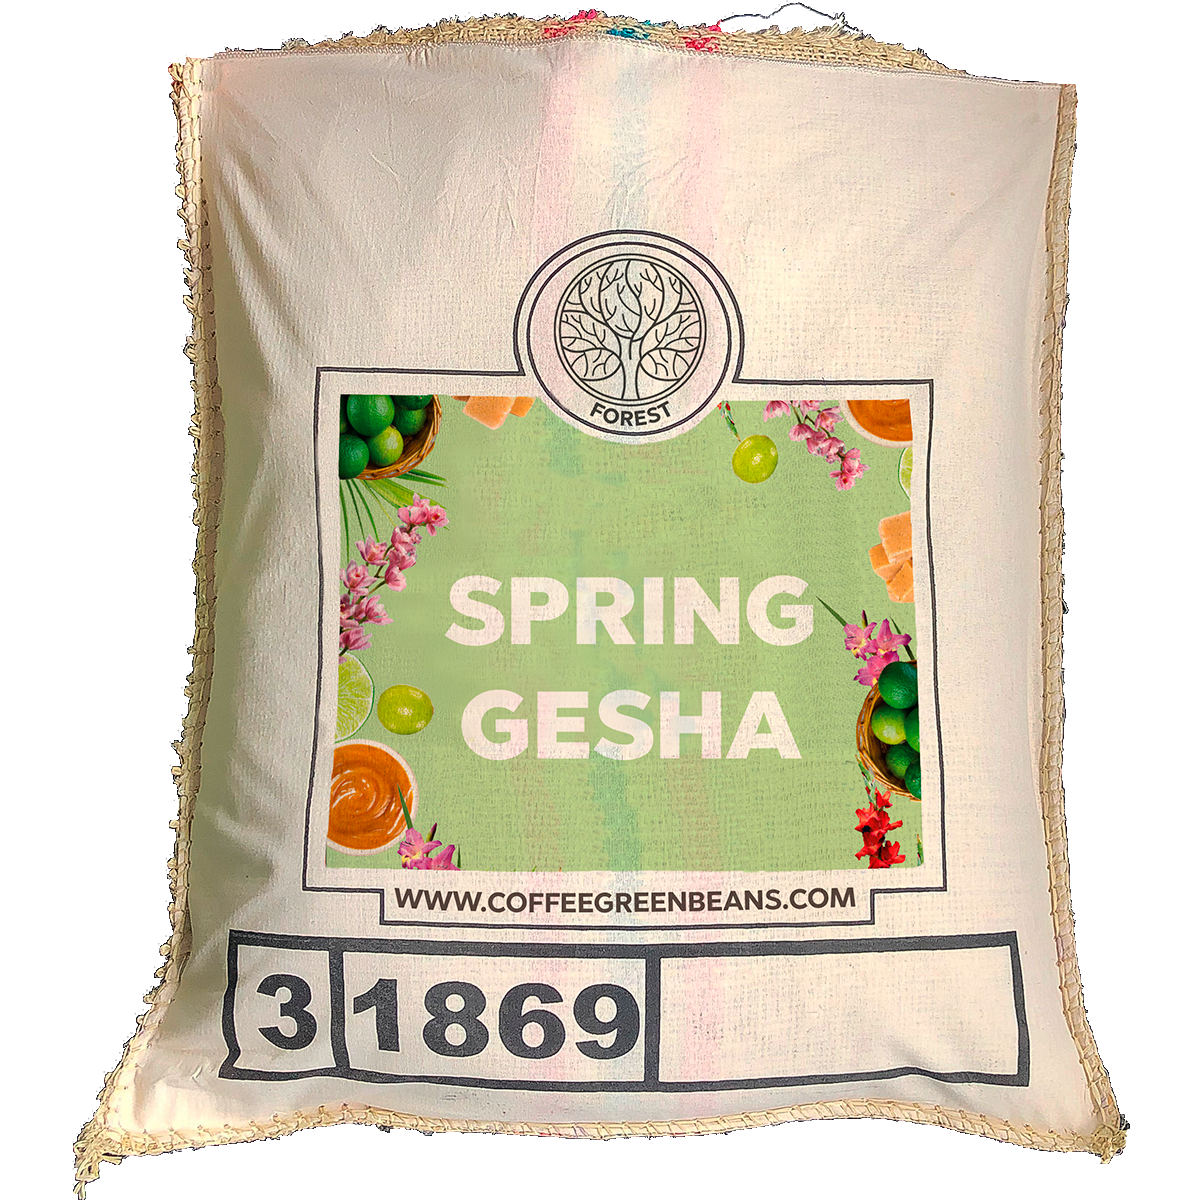 SPRING GESHA - Forest Coffee 